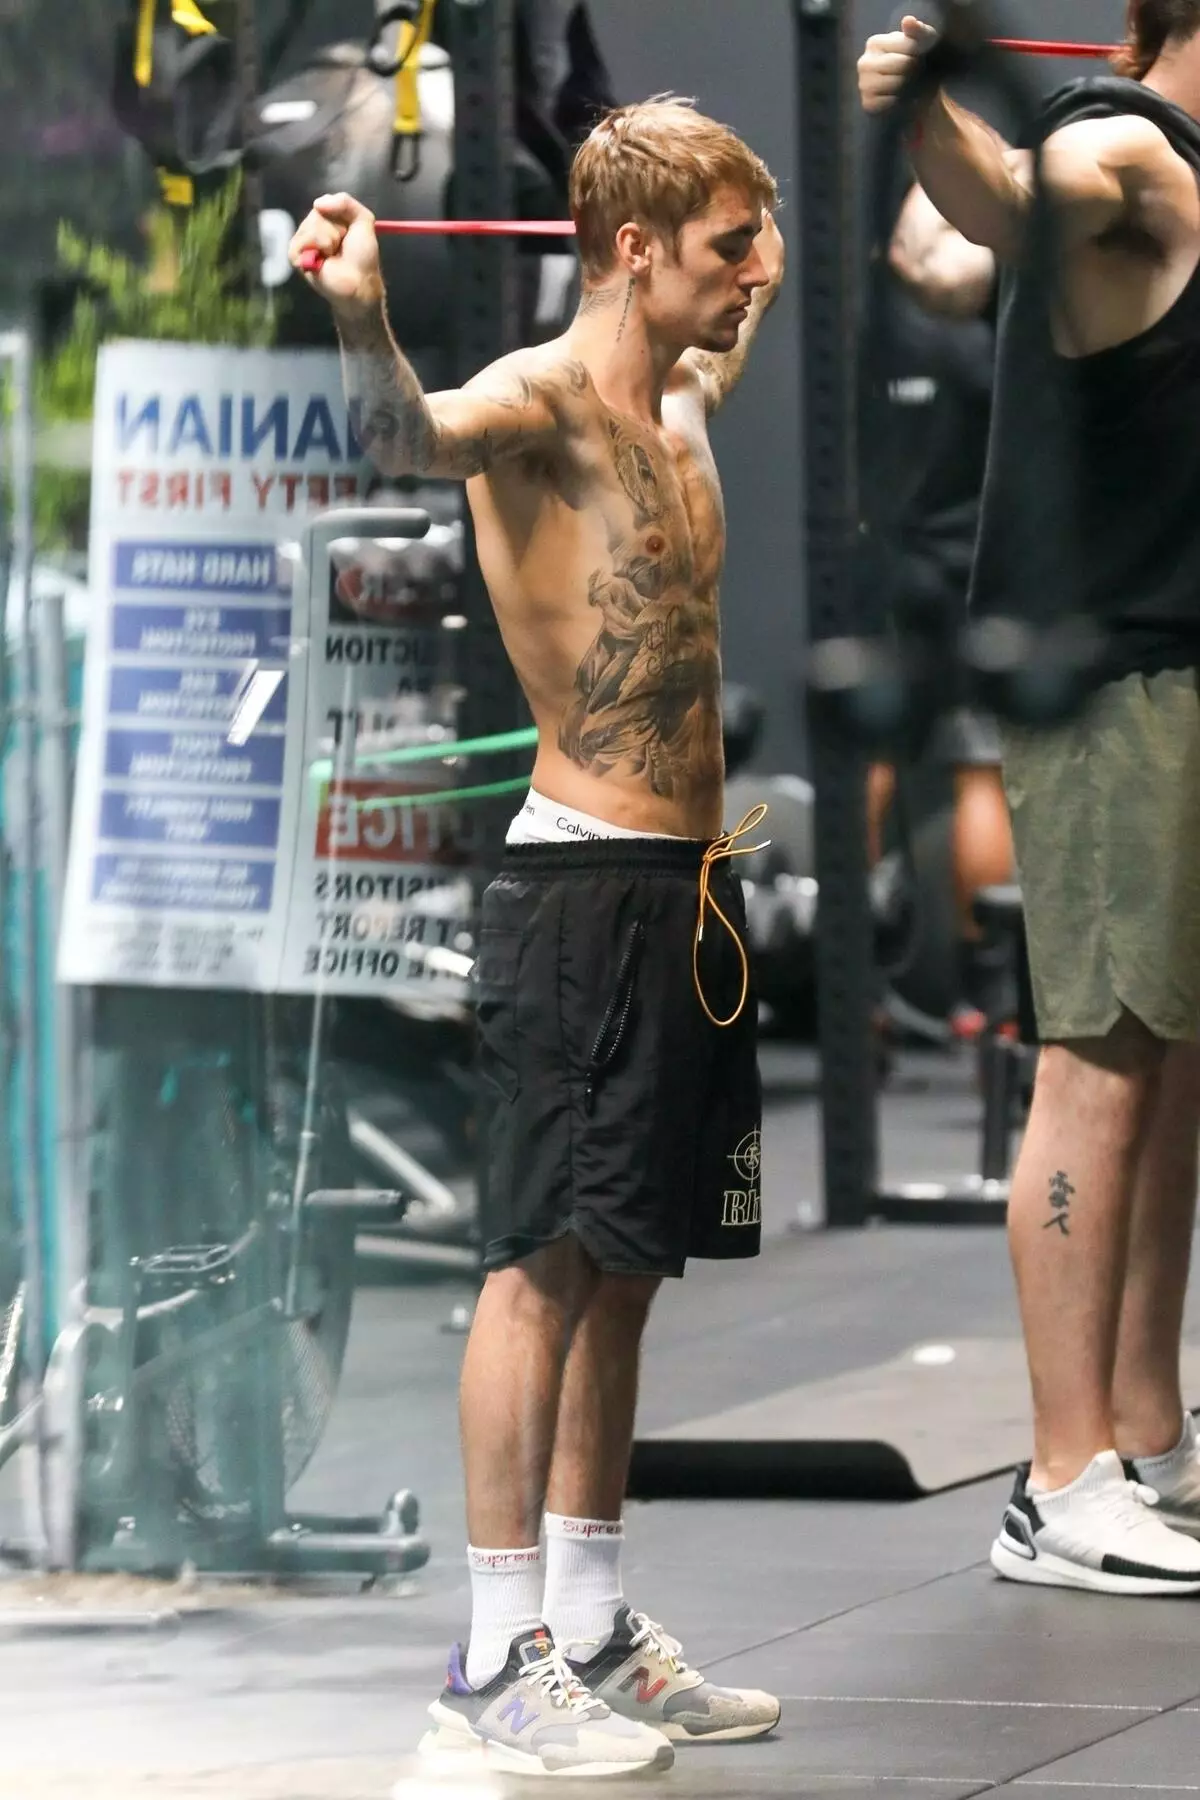 Tagata faigaluega togafitiga: Justin Bieber i le toleniga i Los Angeles 109195_1